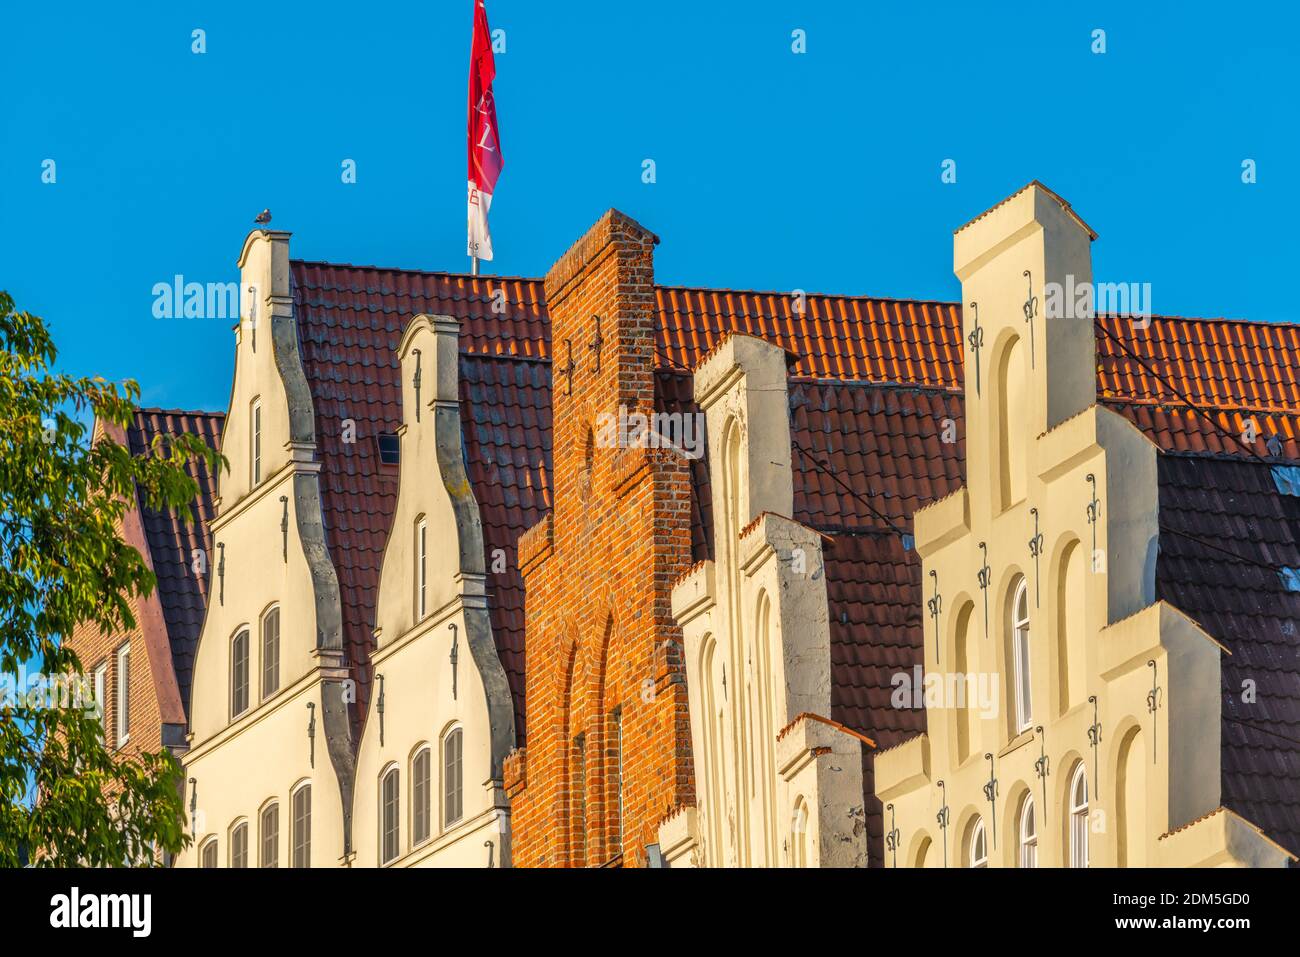 An der Obertrave, una strada popolare lungo il fiume trave, Città anseatica di Lübeck, Patrimonio dell'Umanità dell'UNESCO, Schleswig-Holstein, Germania del Nord, Europa Foto Stock